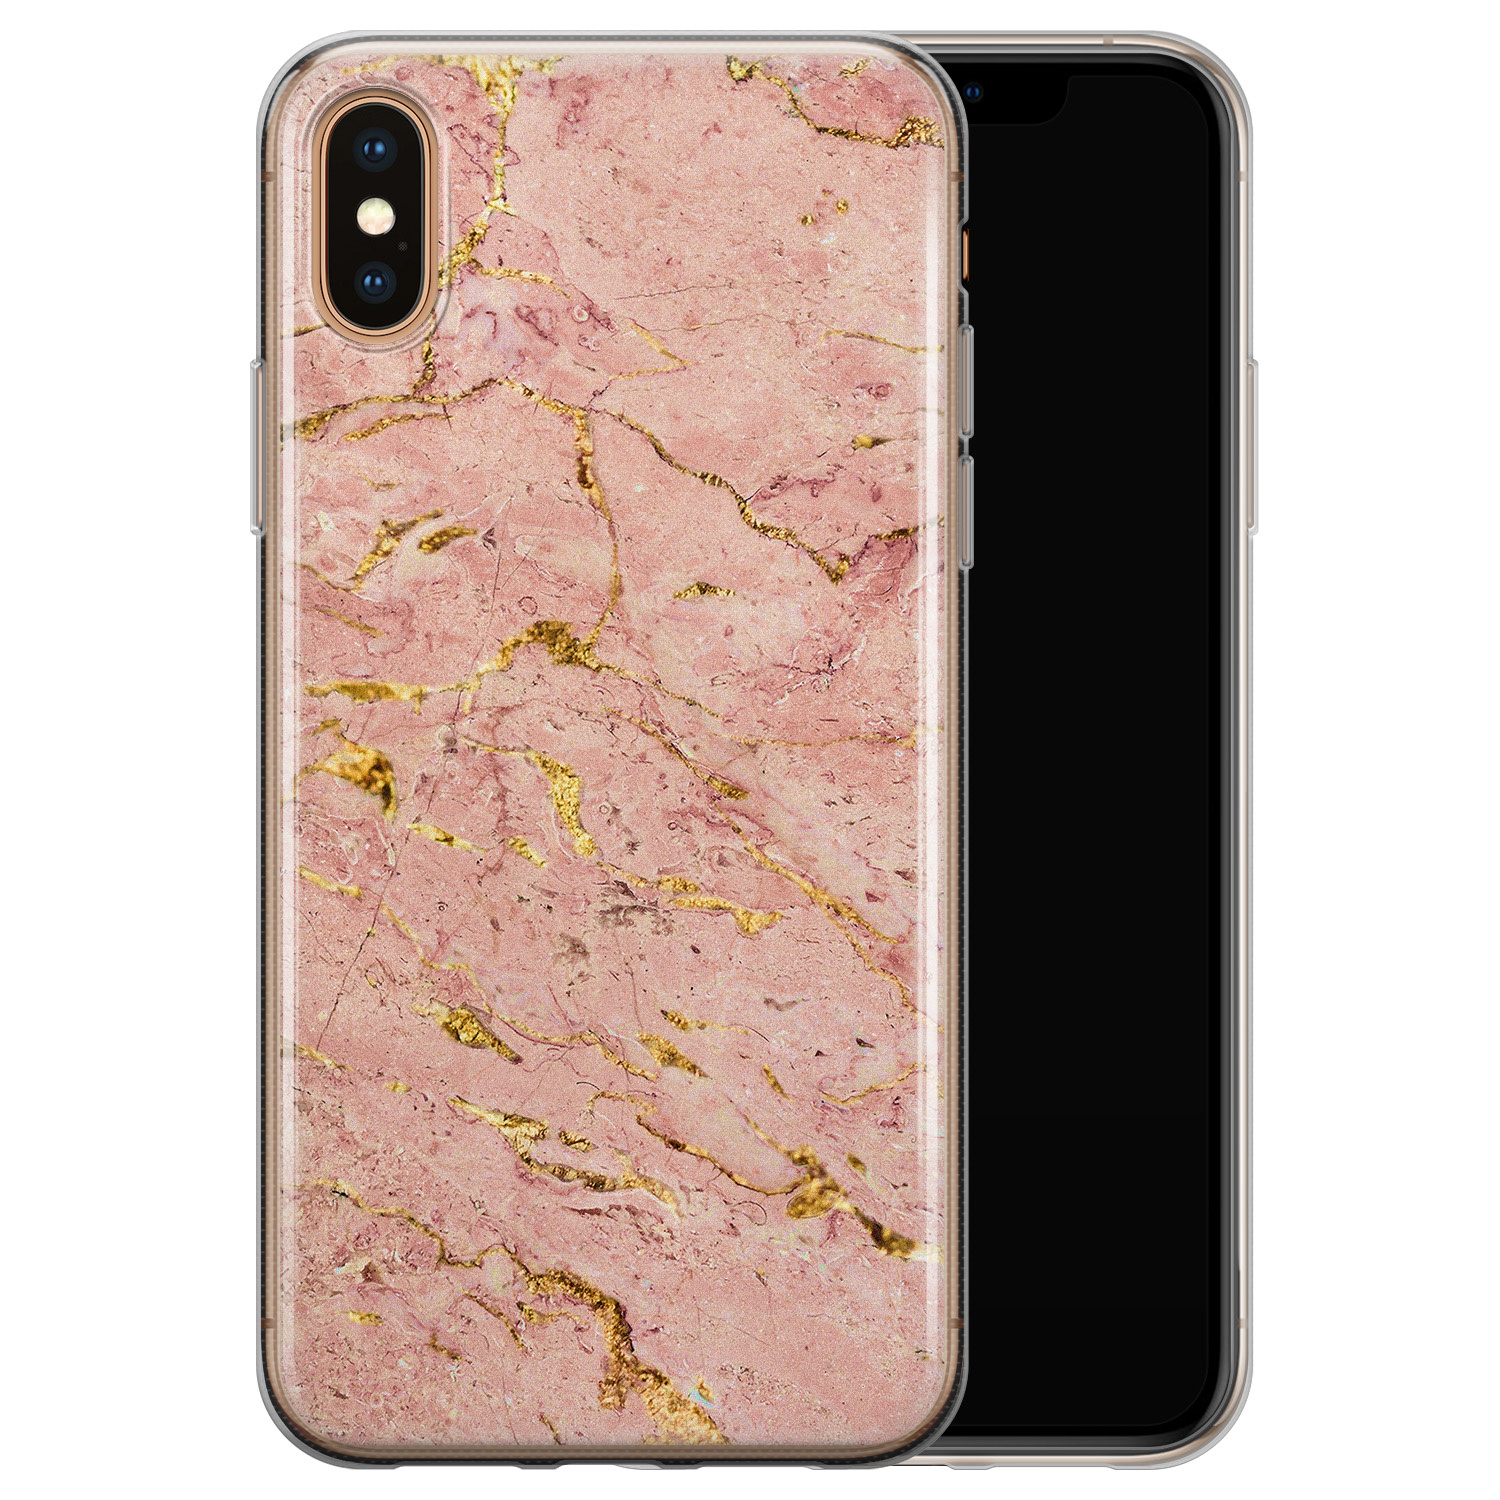 Leuke Telefoonhoesjes iPhone X/XS siliconen hoesje - Marmer roze goud